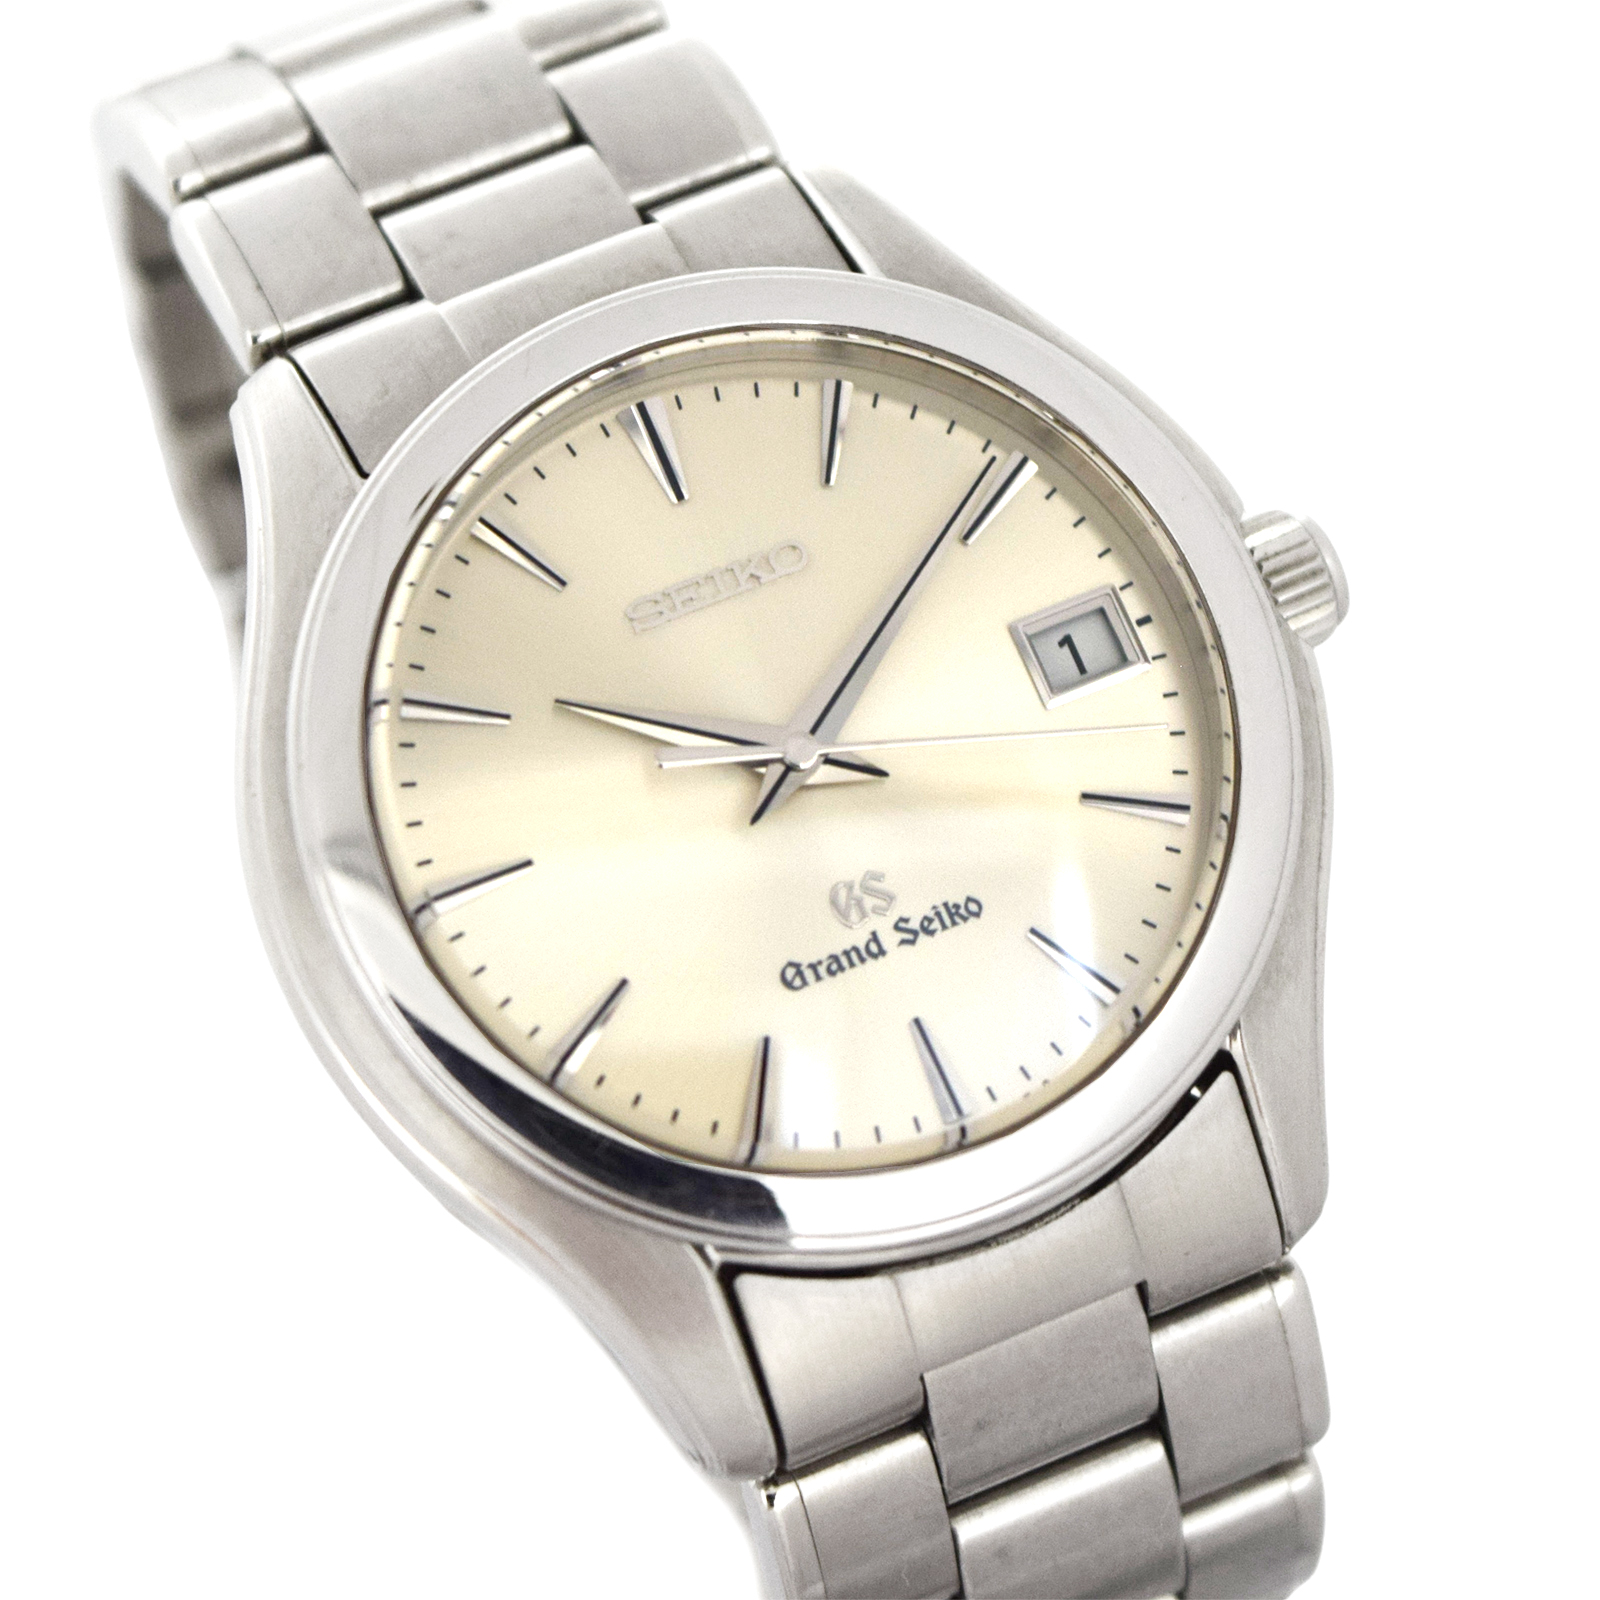 SEIKO セイコー  グランドセイコー  SBGX005 9F62-0A10  メンズ 腕時計